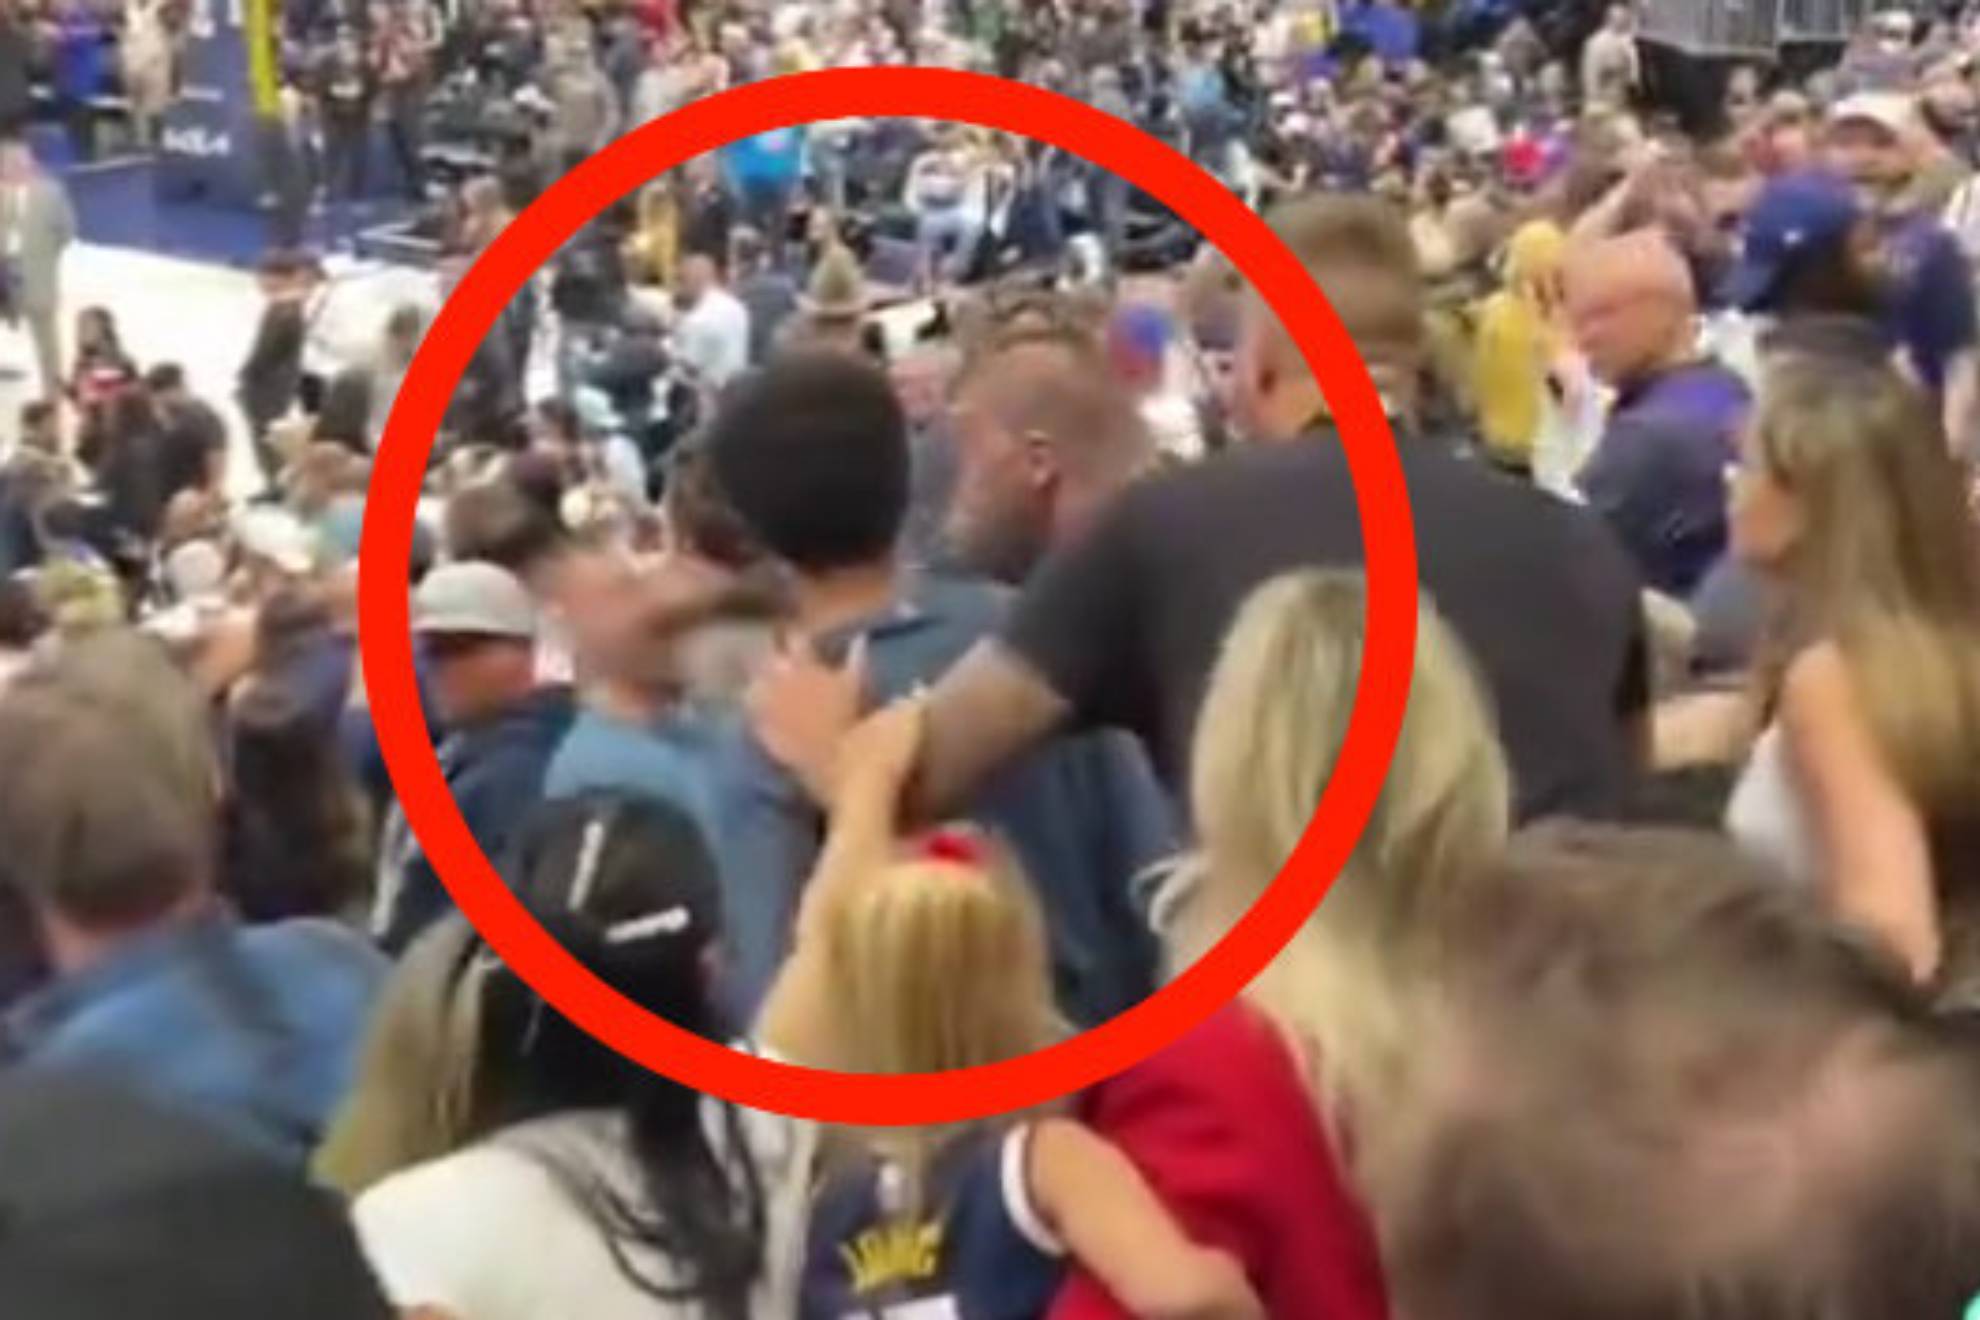 Graban al hermano de Jokic pegndole un brutal puetazo en la cara a un aficionado durante los Playoffs NBA